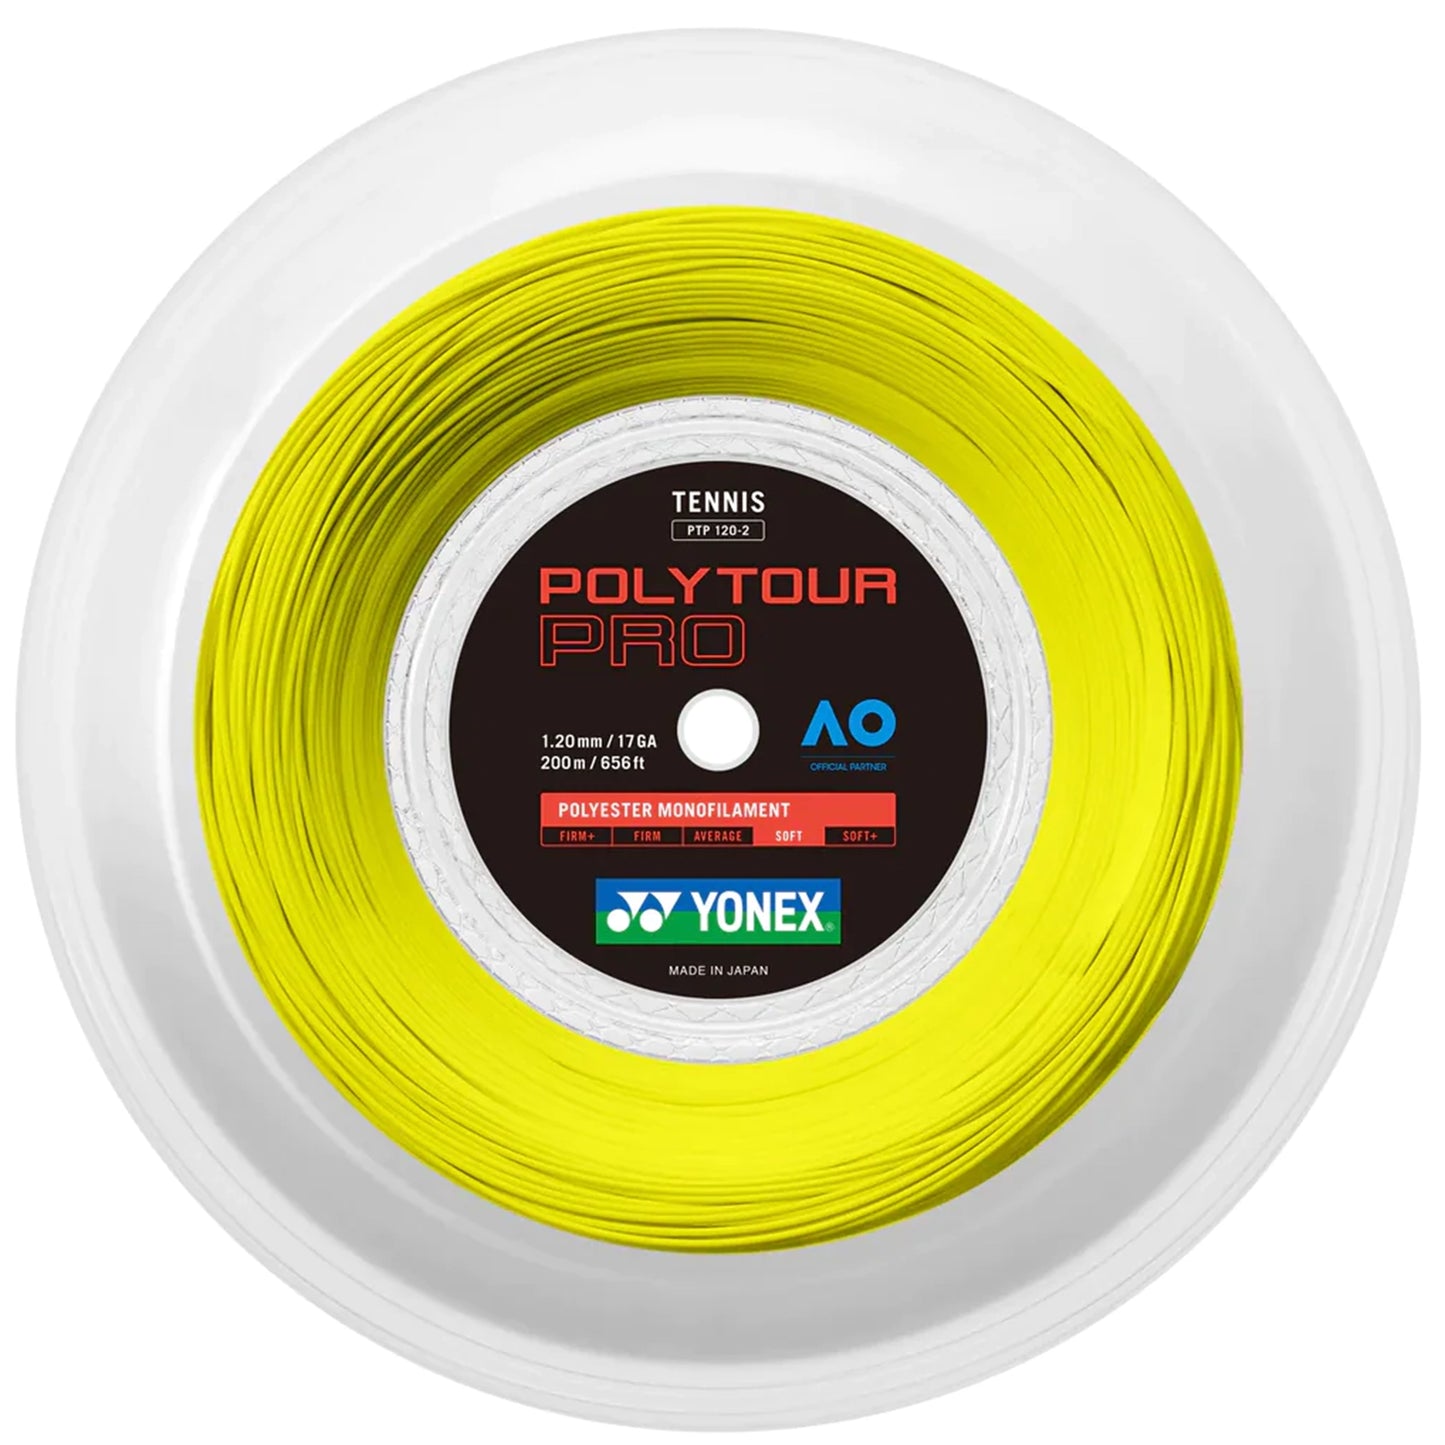 Yonex reel Polytour Pro 120 Yellow (200M)